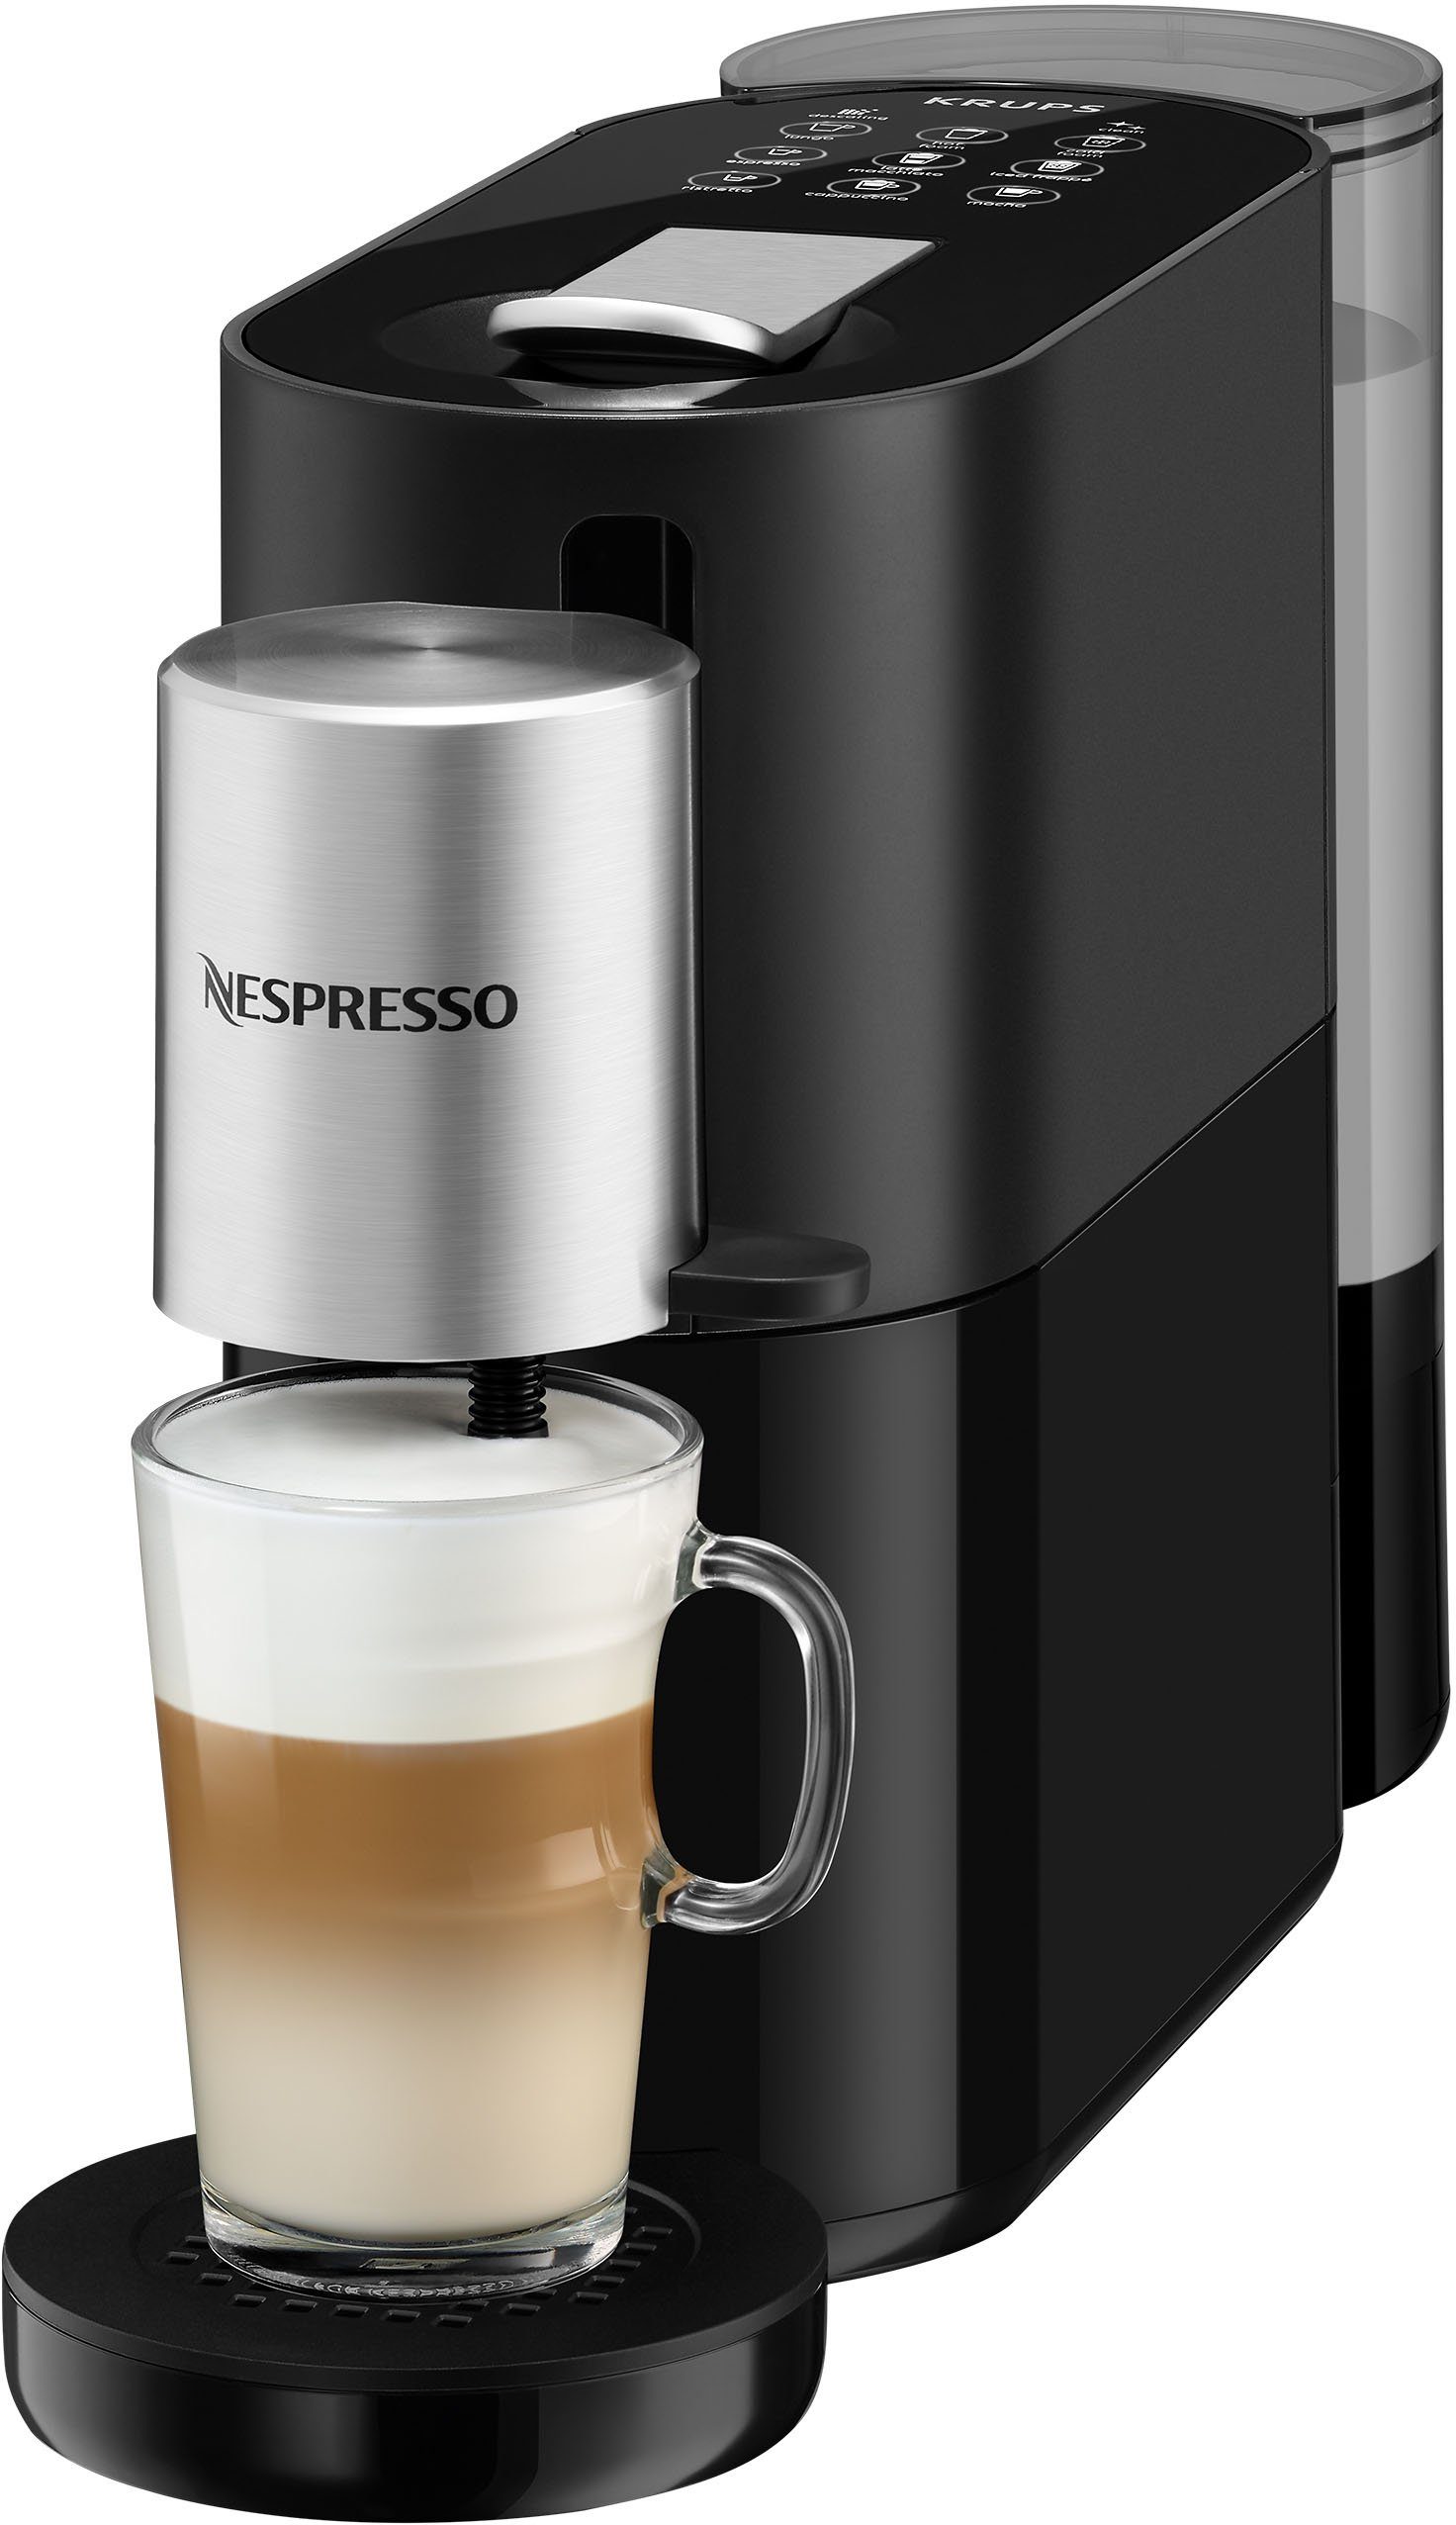 Nespresso Kapselmaschine XN8908 Atelier von Druck, Krups, + Bar inkl. 1 19 Kapseln Nespresso L, Glastasse Wassertank